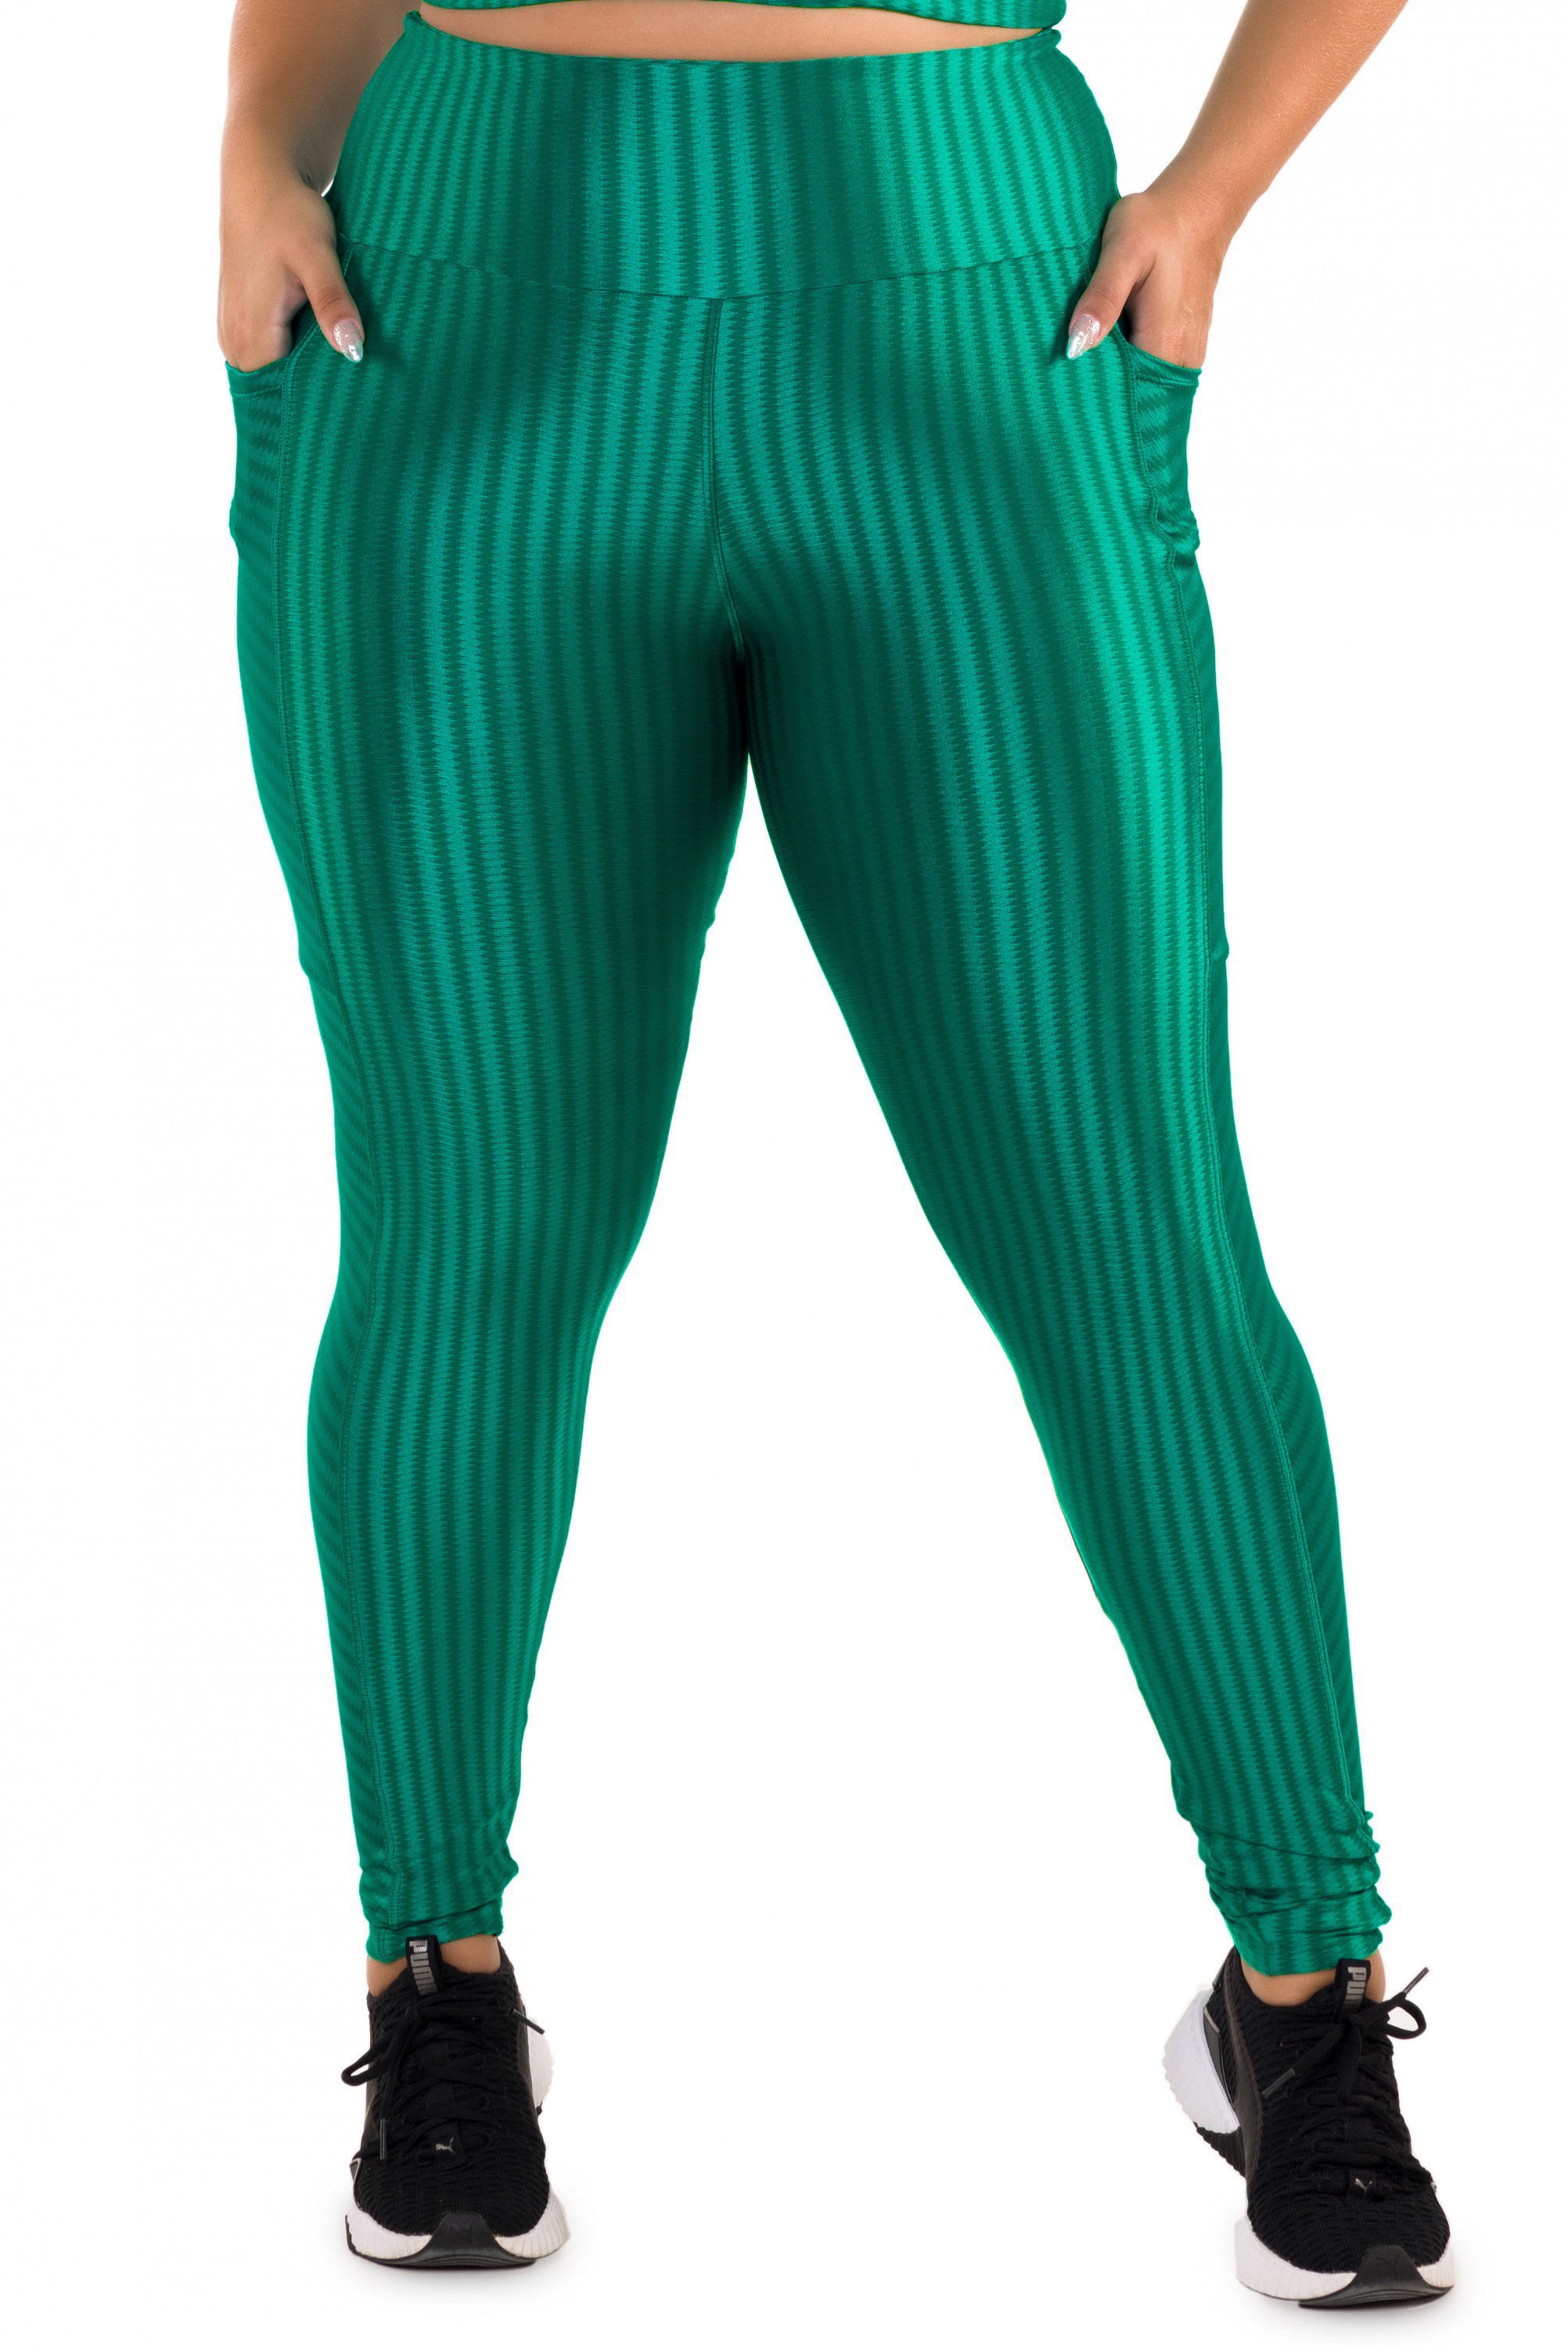 Legging Ikat em Tecido Texturizado Verde - Donna Carioca Moda Fitness